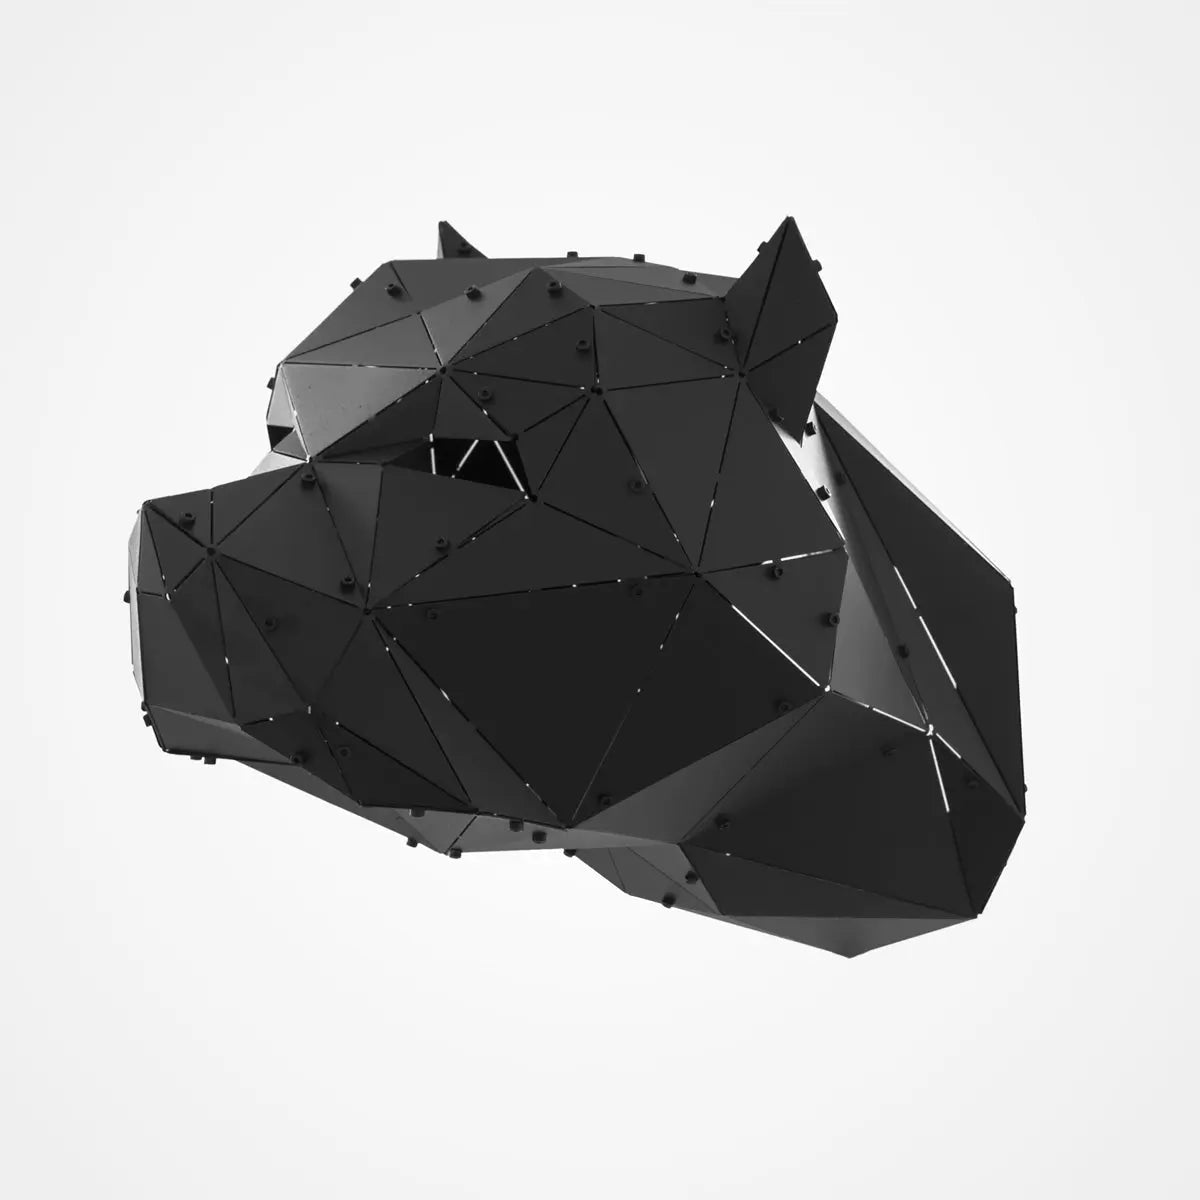 PITBULL | 3D Metal Geometric Pitbull Head Wall Decor OTTOCKRAFT™